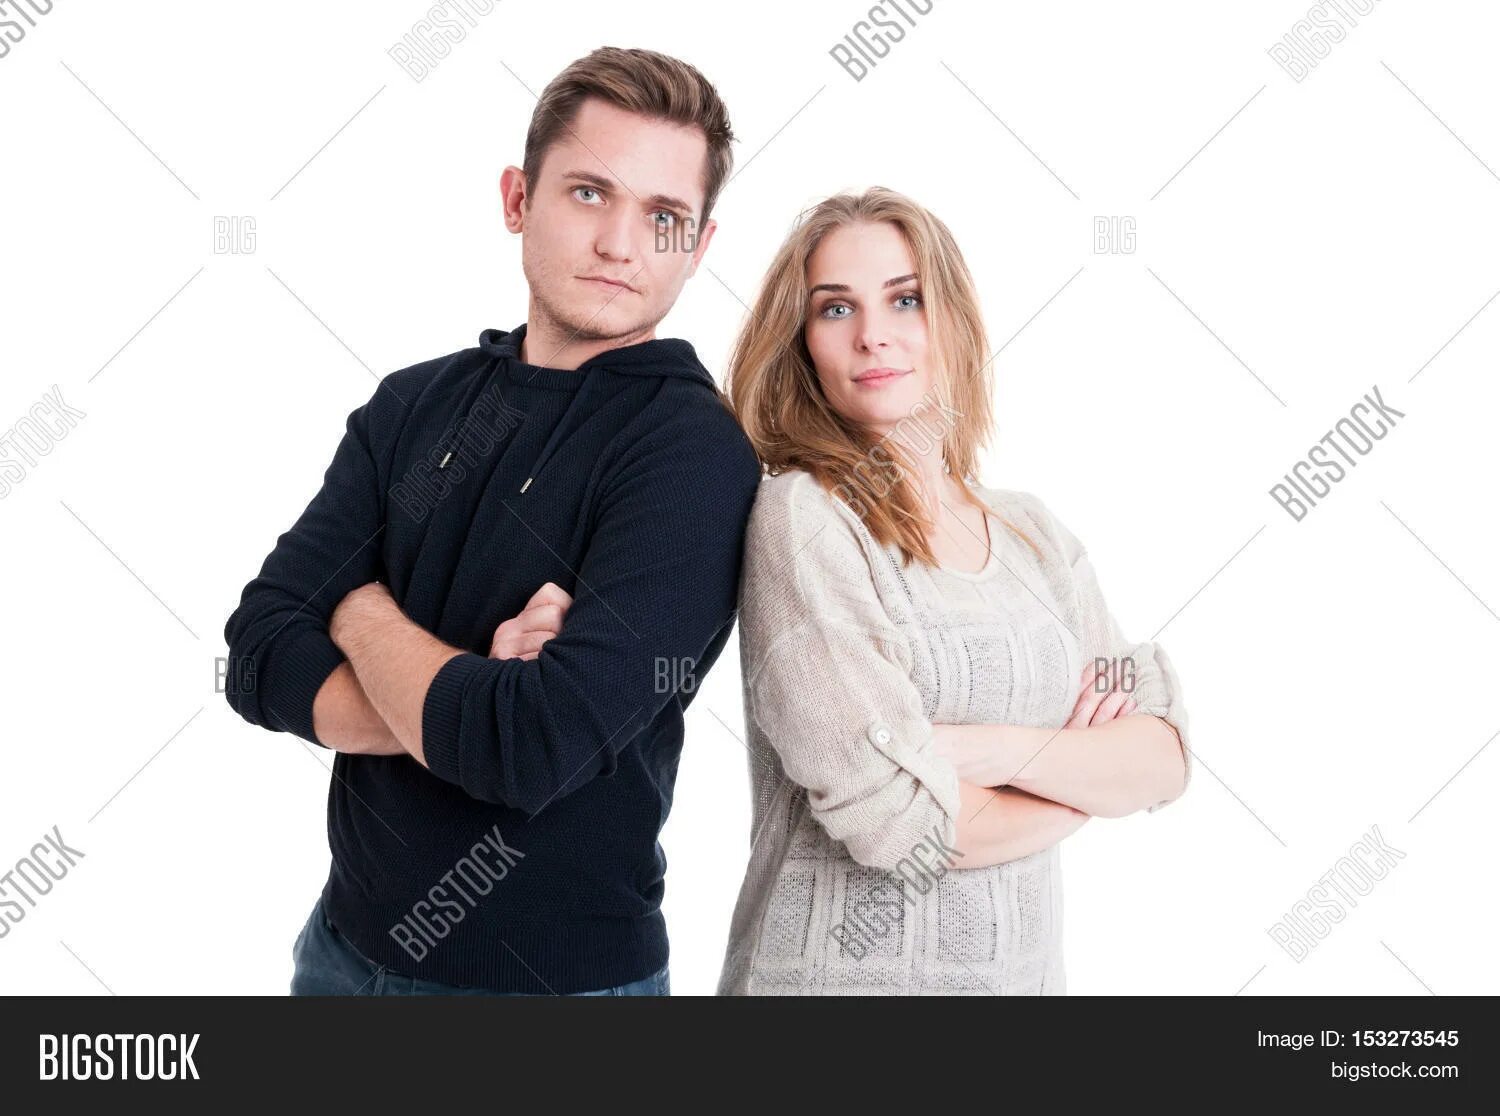 Два человека указывают друг на друга. Мужчина и женщина стоят рядом. Стоят спина к спине. Люди спина к спине. Мужчины спина к спине.